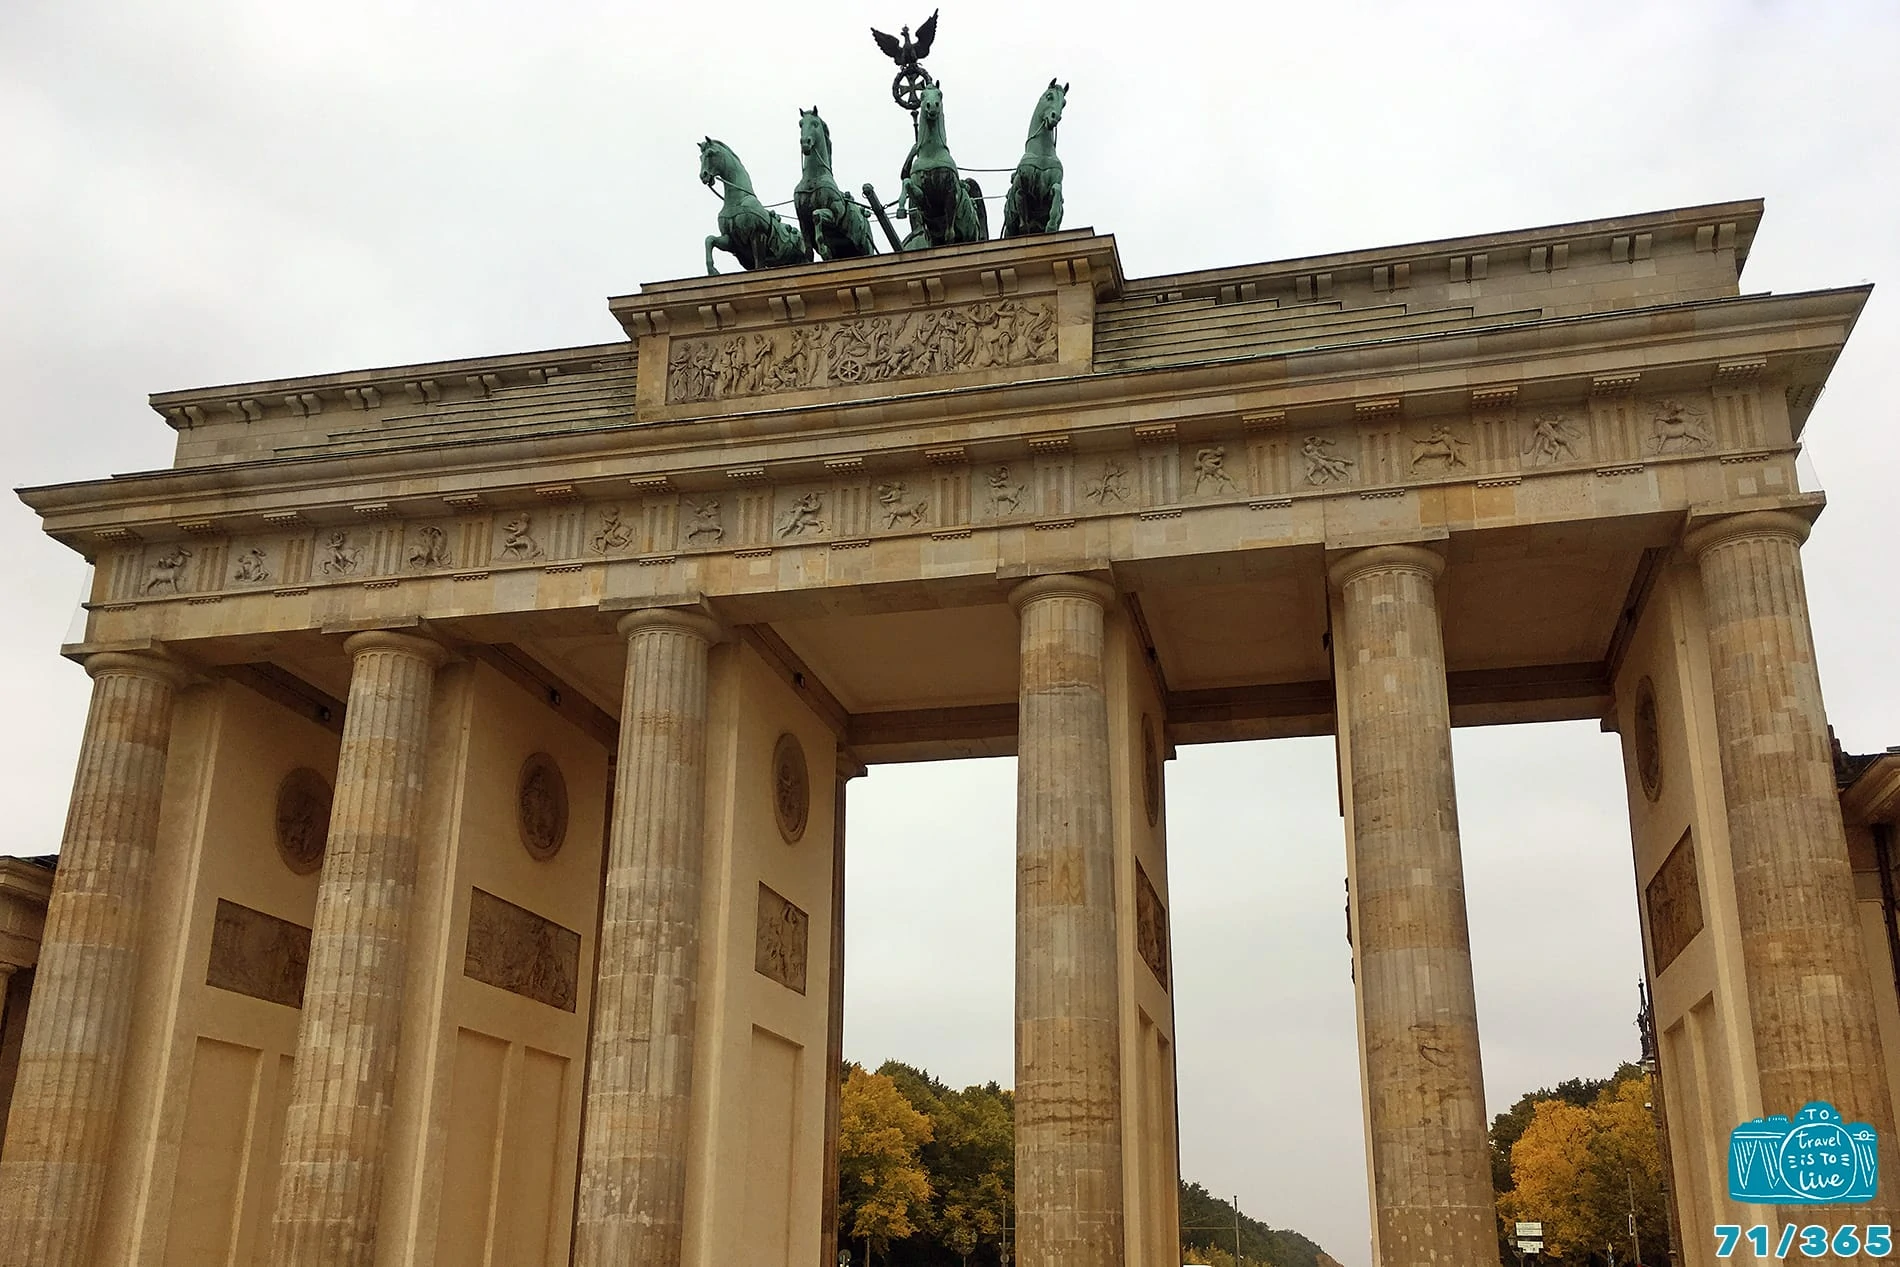 Portão de Brandemburgo, Berlim